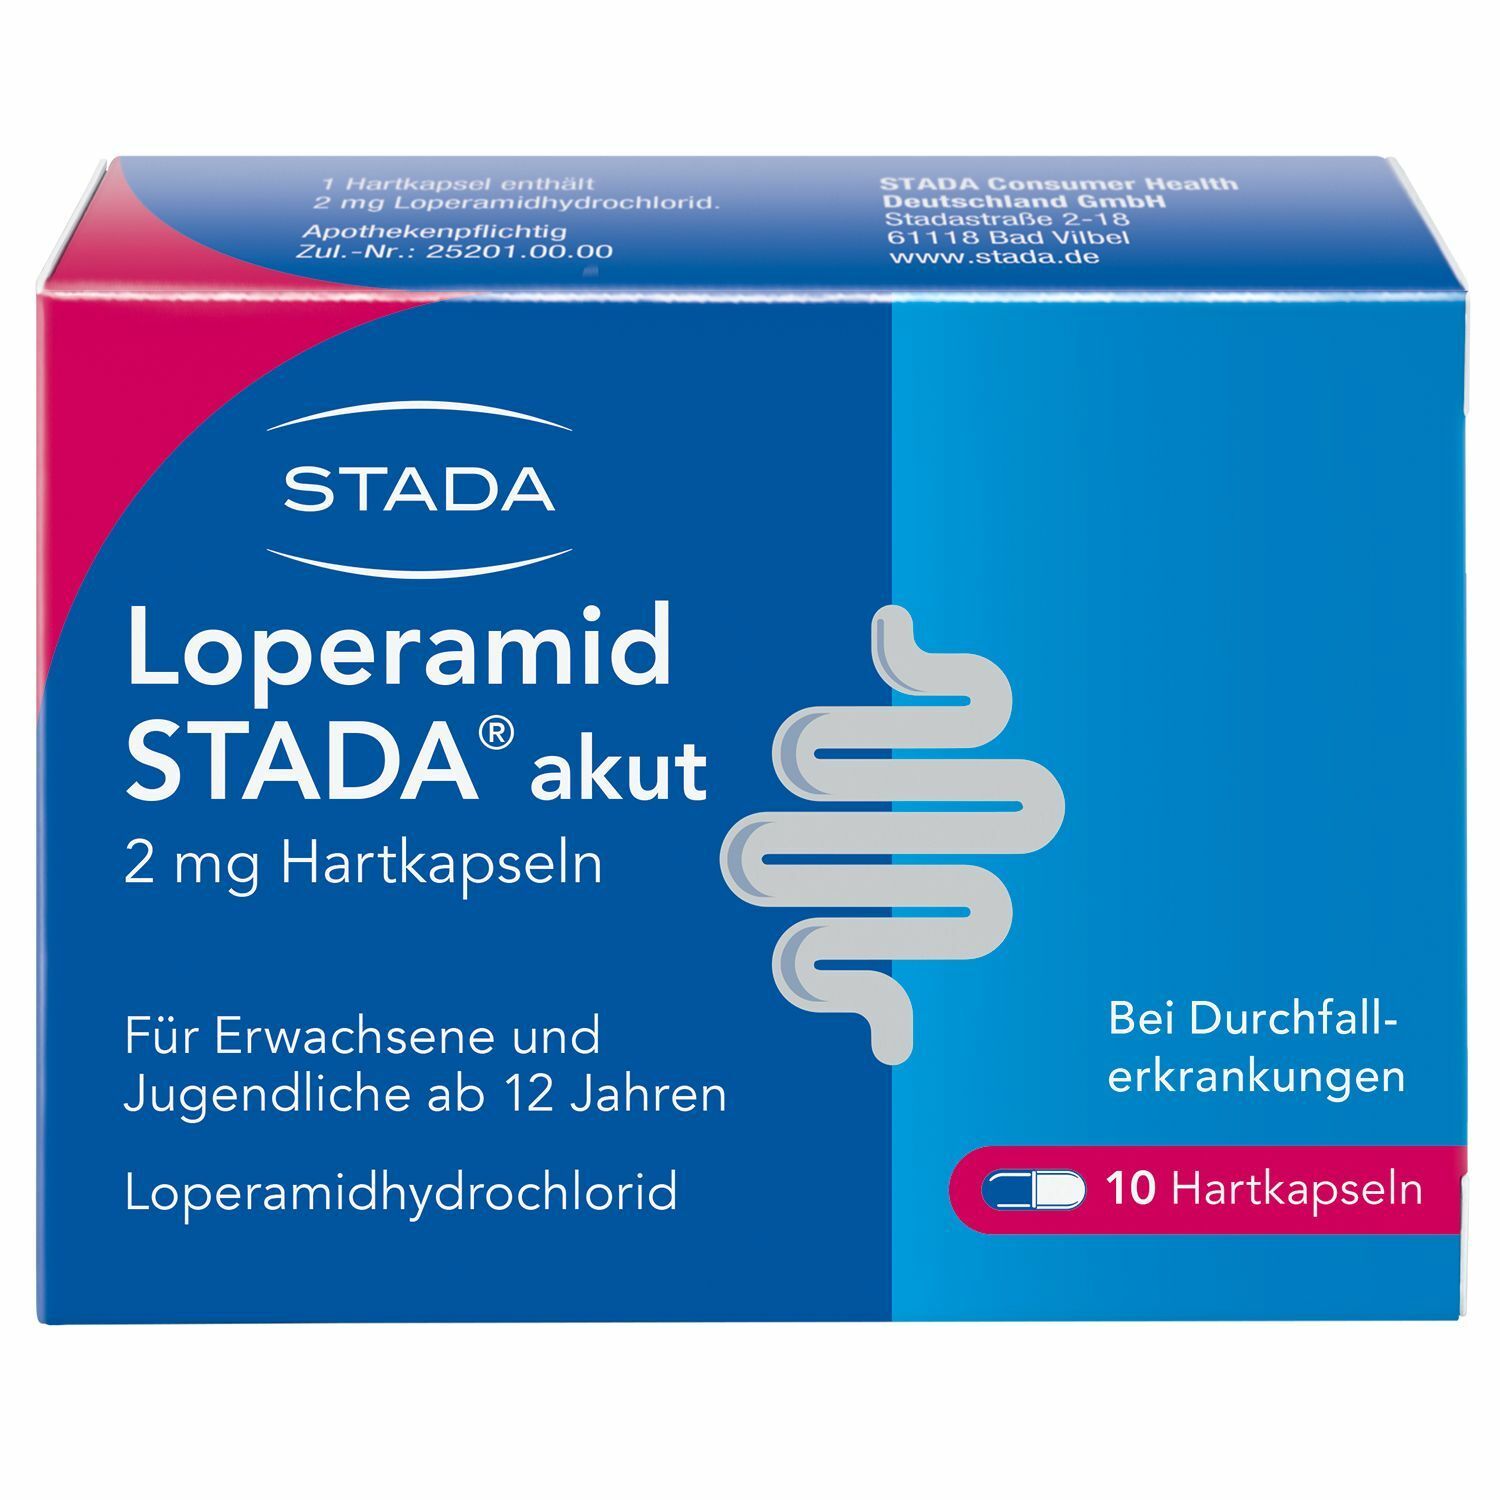 Loperamid STADA® akut 2mg Hartkapseln bei akutem Durchfall